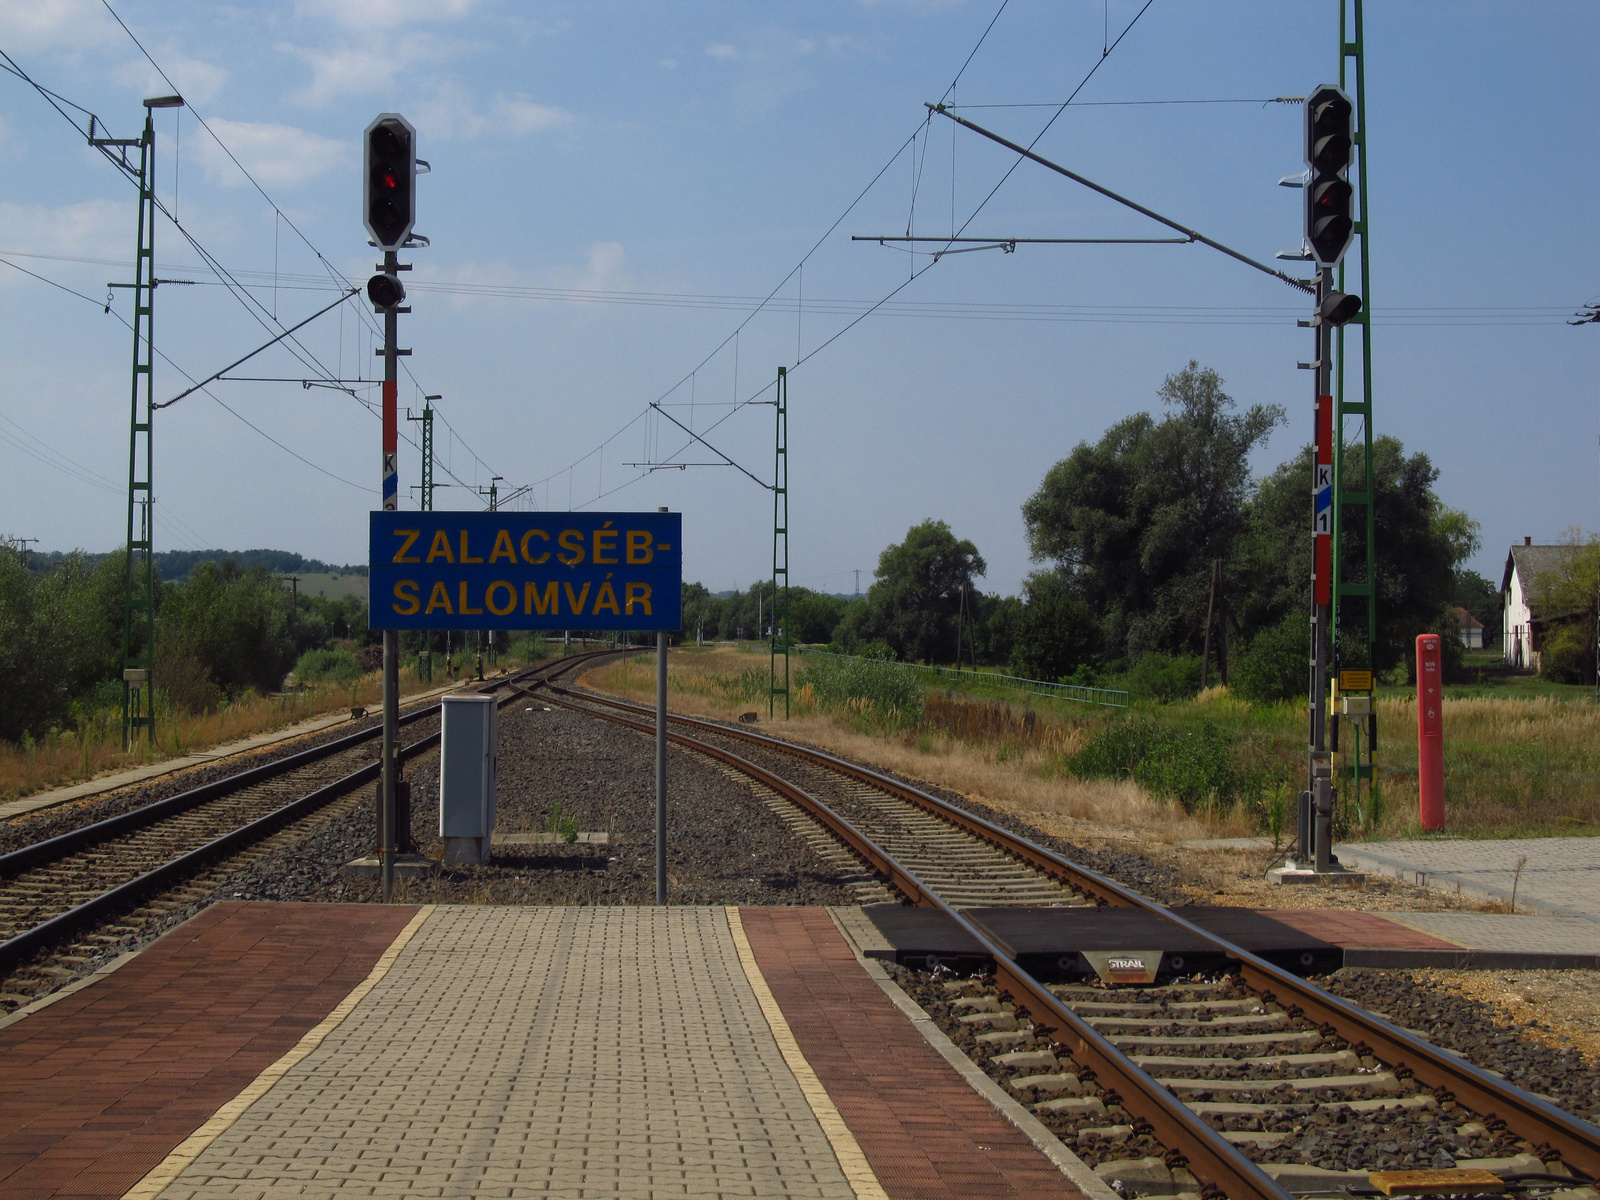 040 Zalacséb - Salomvár